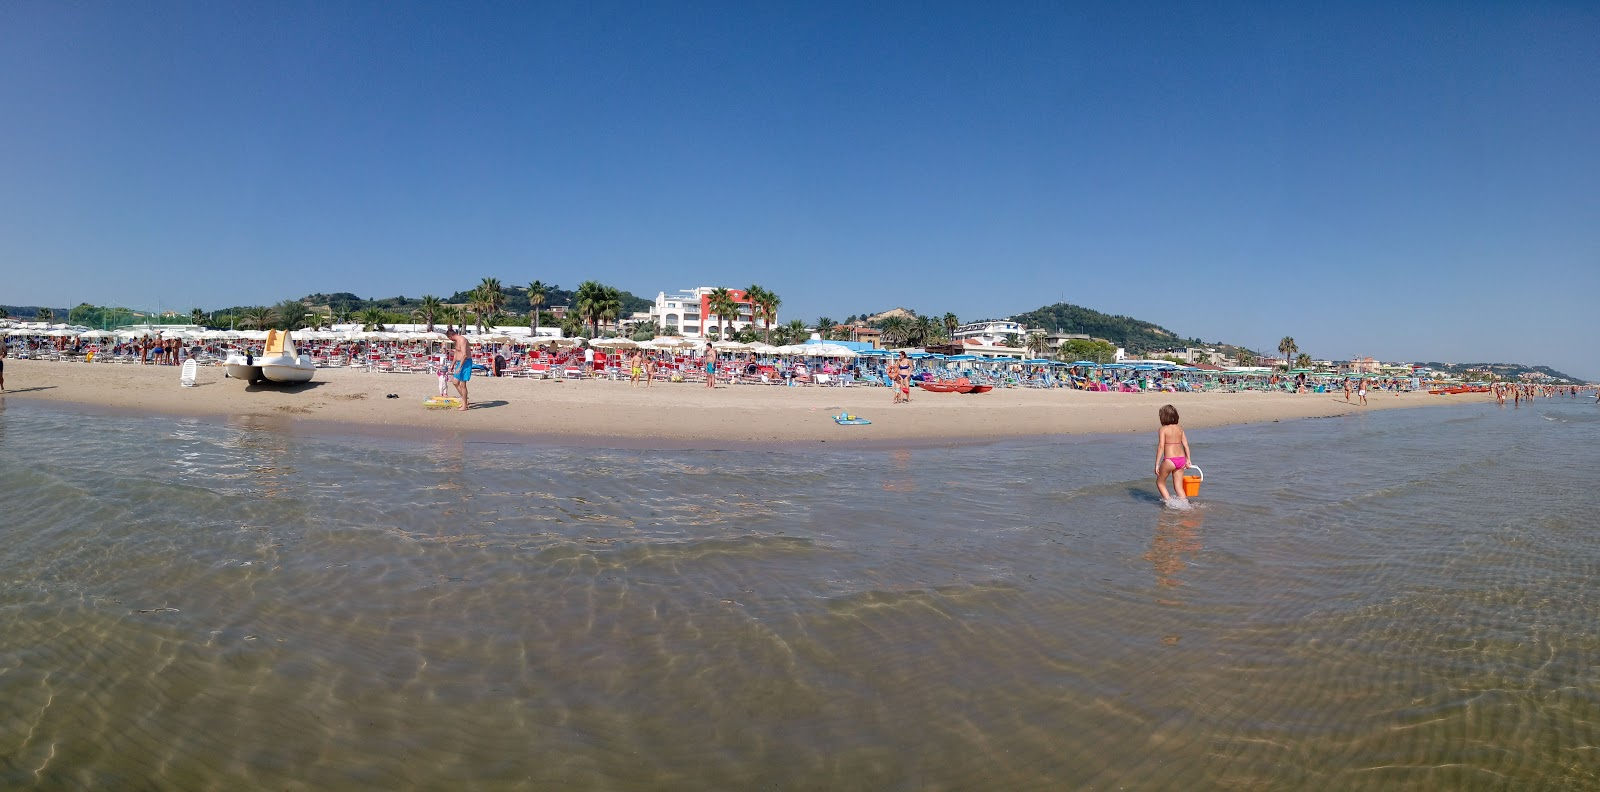 Colibri' Beach'in fotoğrafı geniş plaj ile birlikte